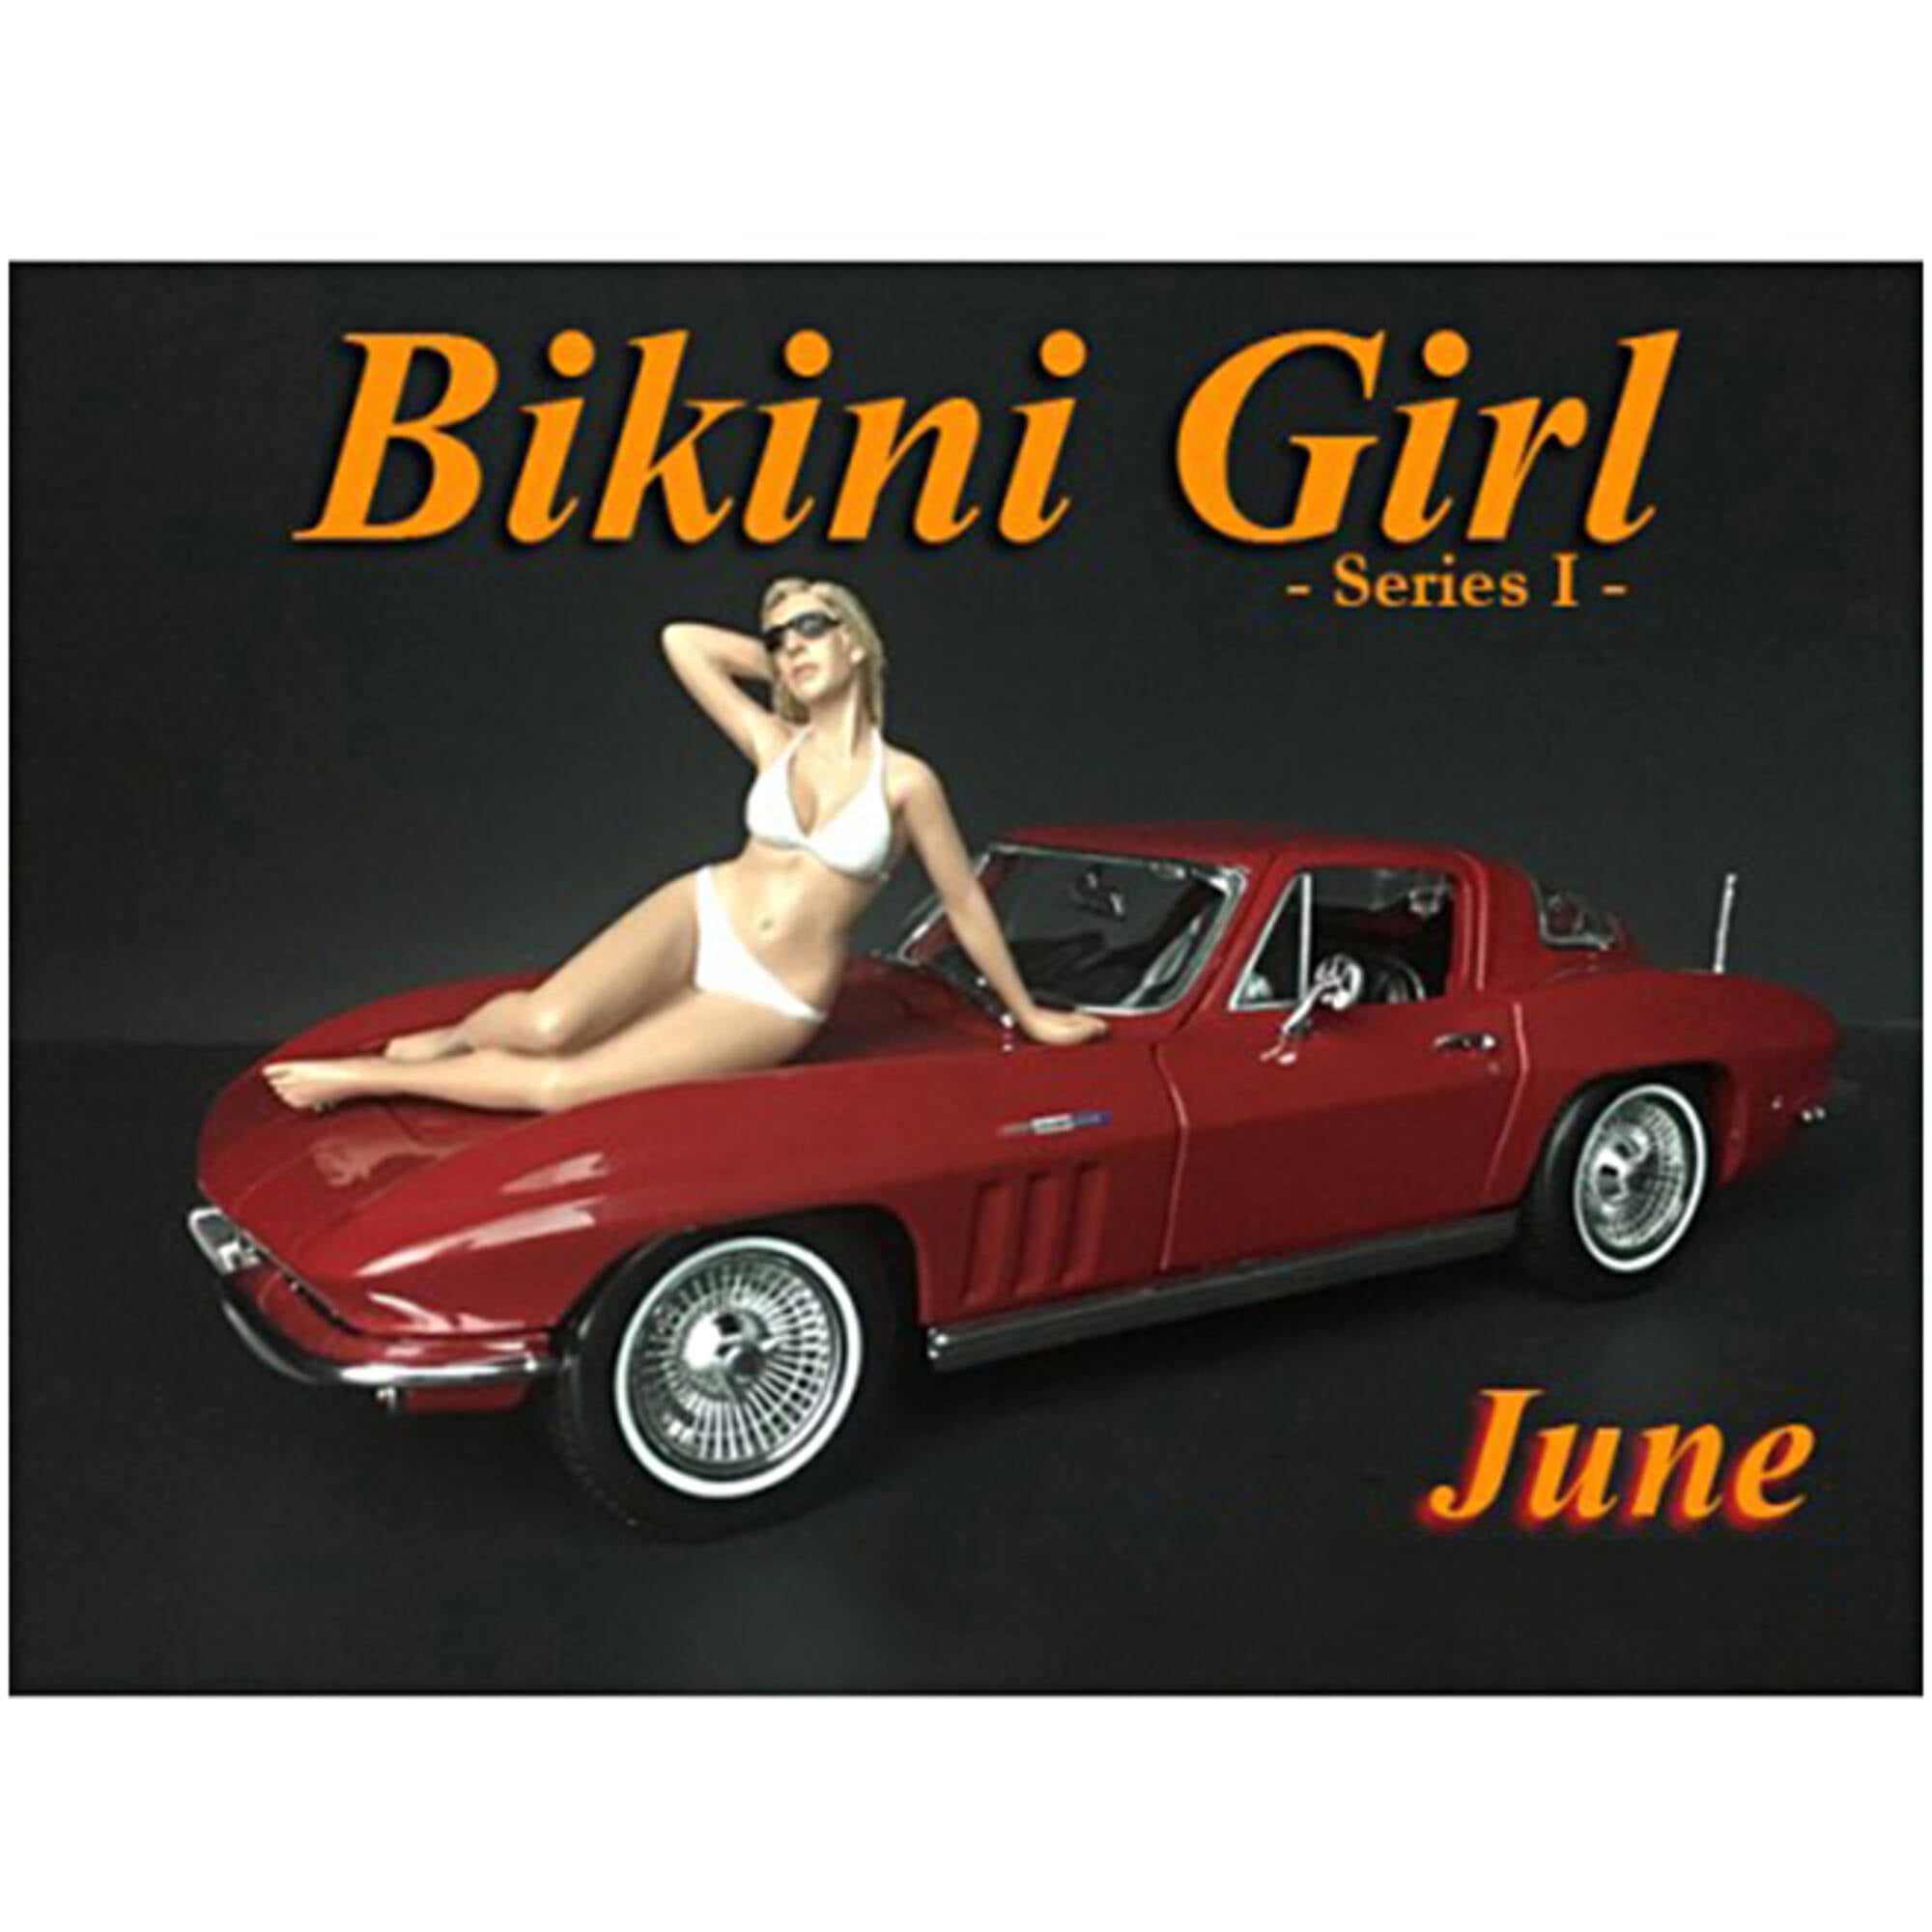 38270 June Bikini Calendar Girl Figure For 1 Isto 24 Models Diecast Cars